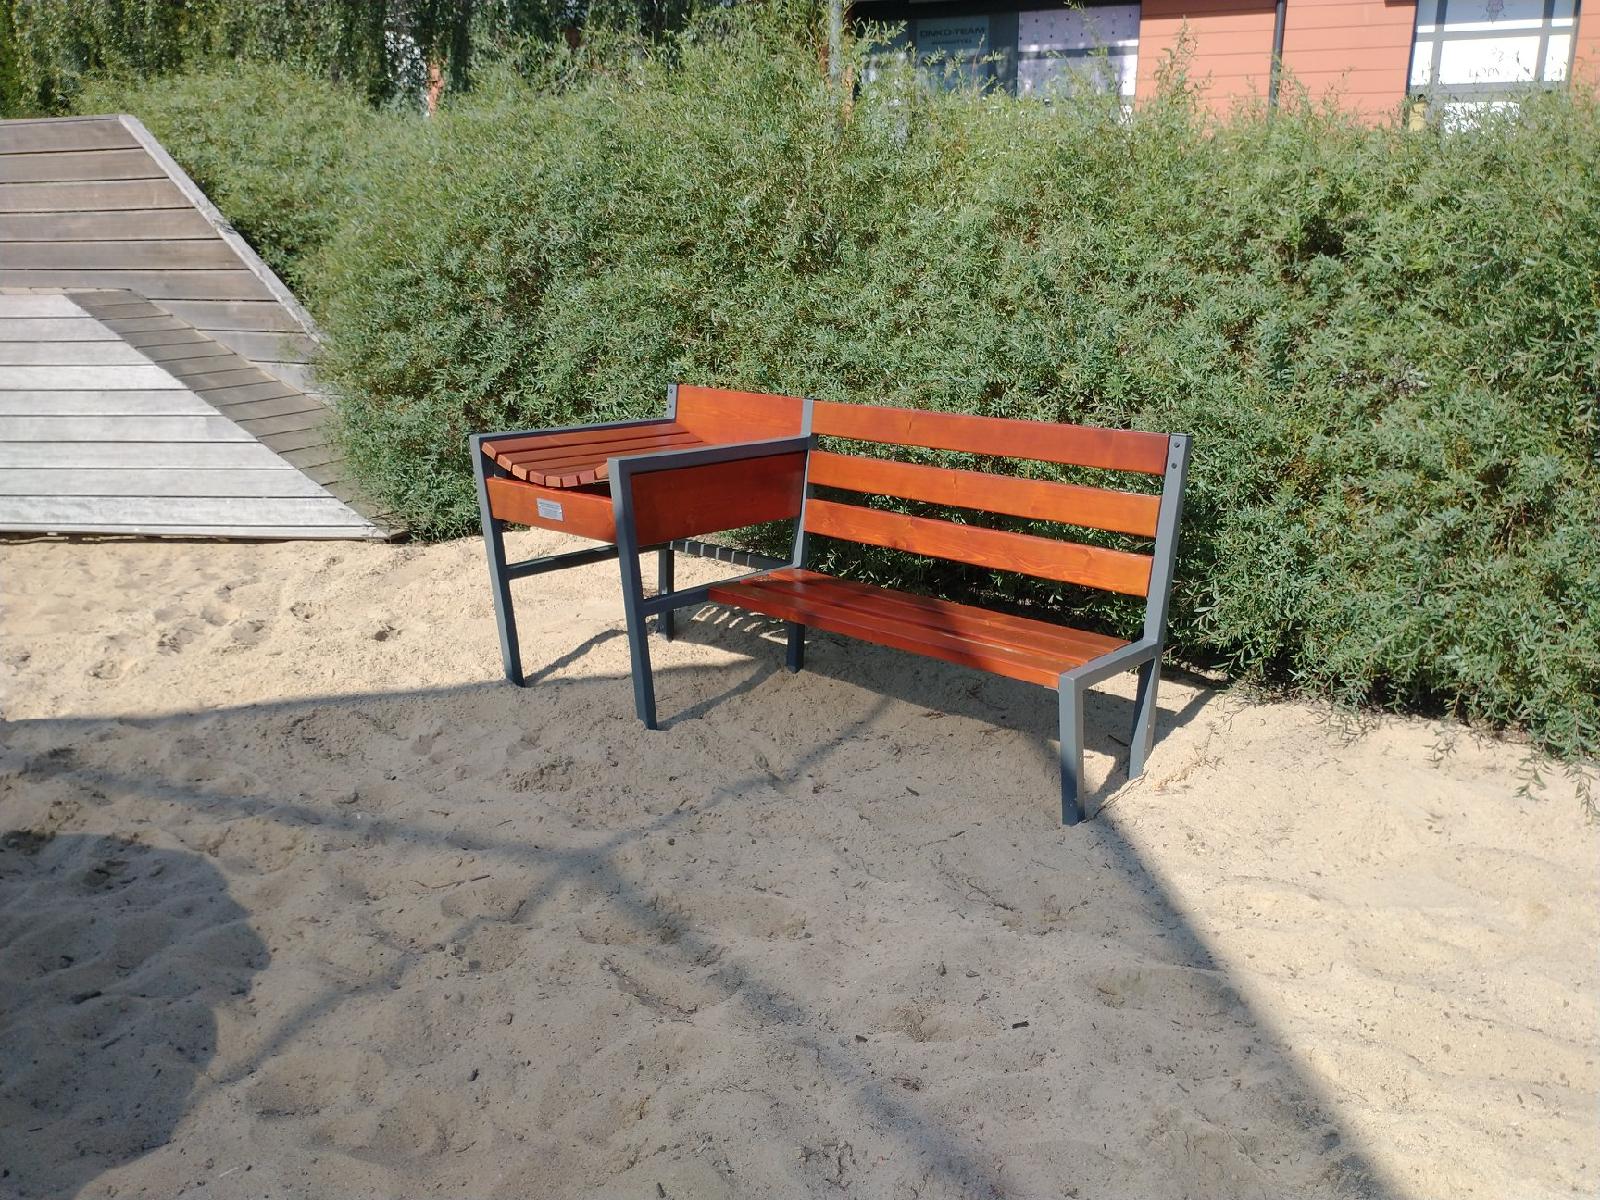 Na zdjęciu znajduje się ławka z zamontowanym przewijakiem dla dzieci. Ławka stoi na piasku, w tle widać zielone krzewy. - grafika artykułu